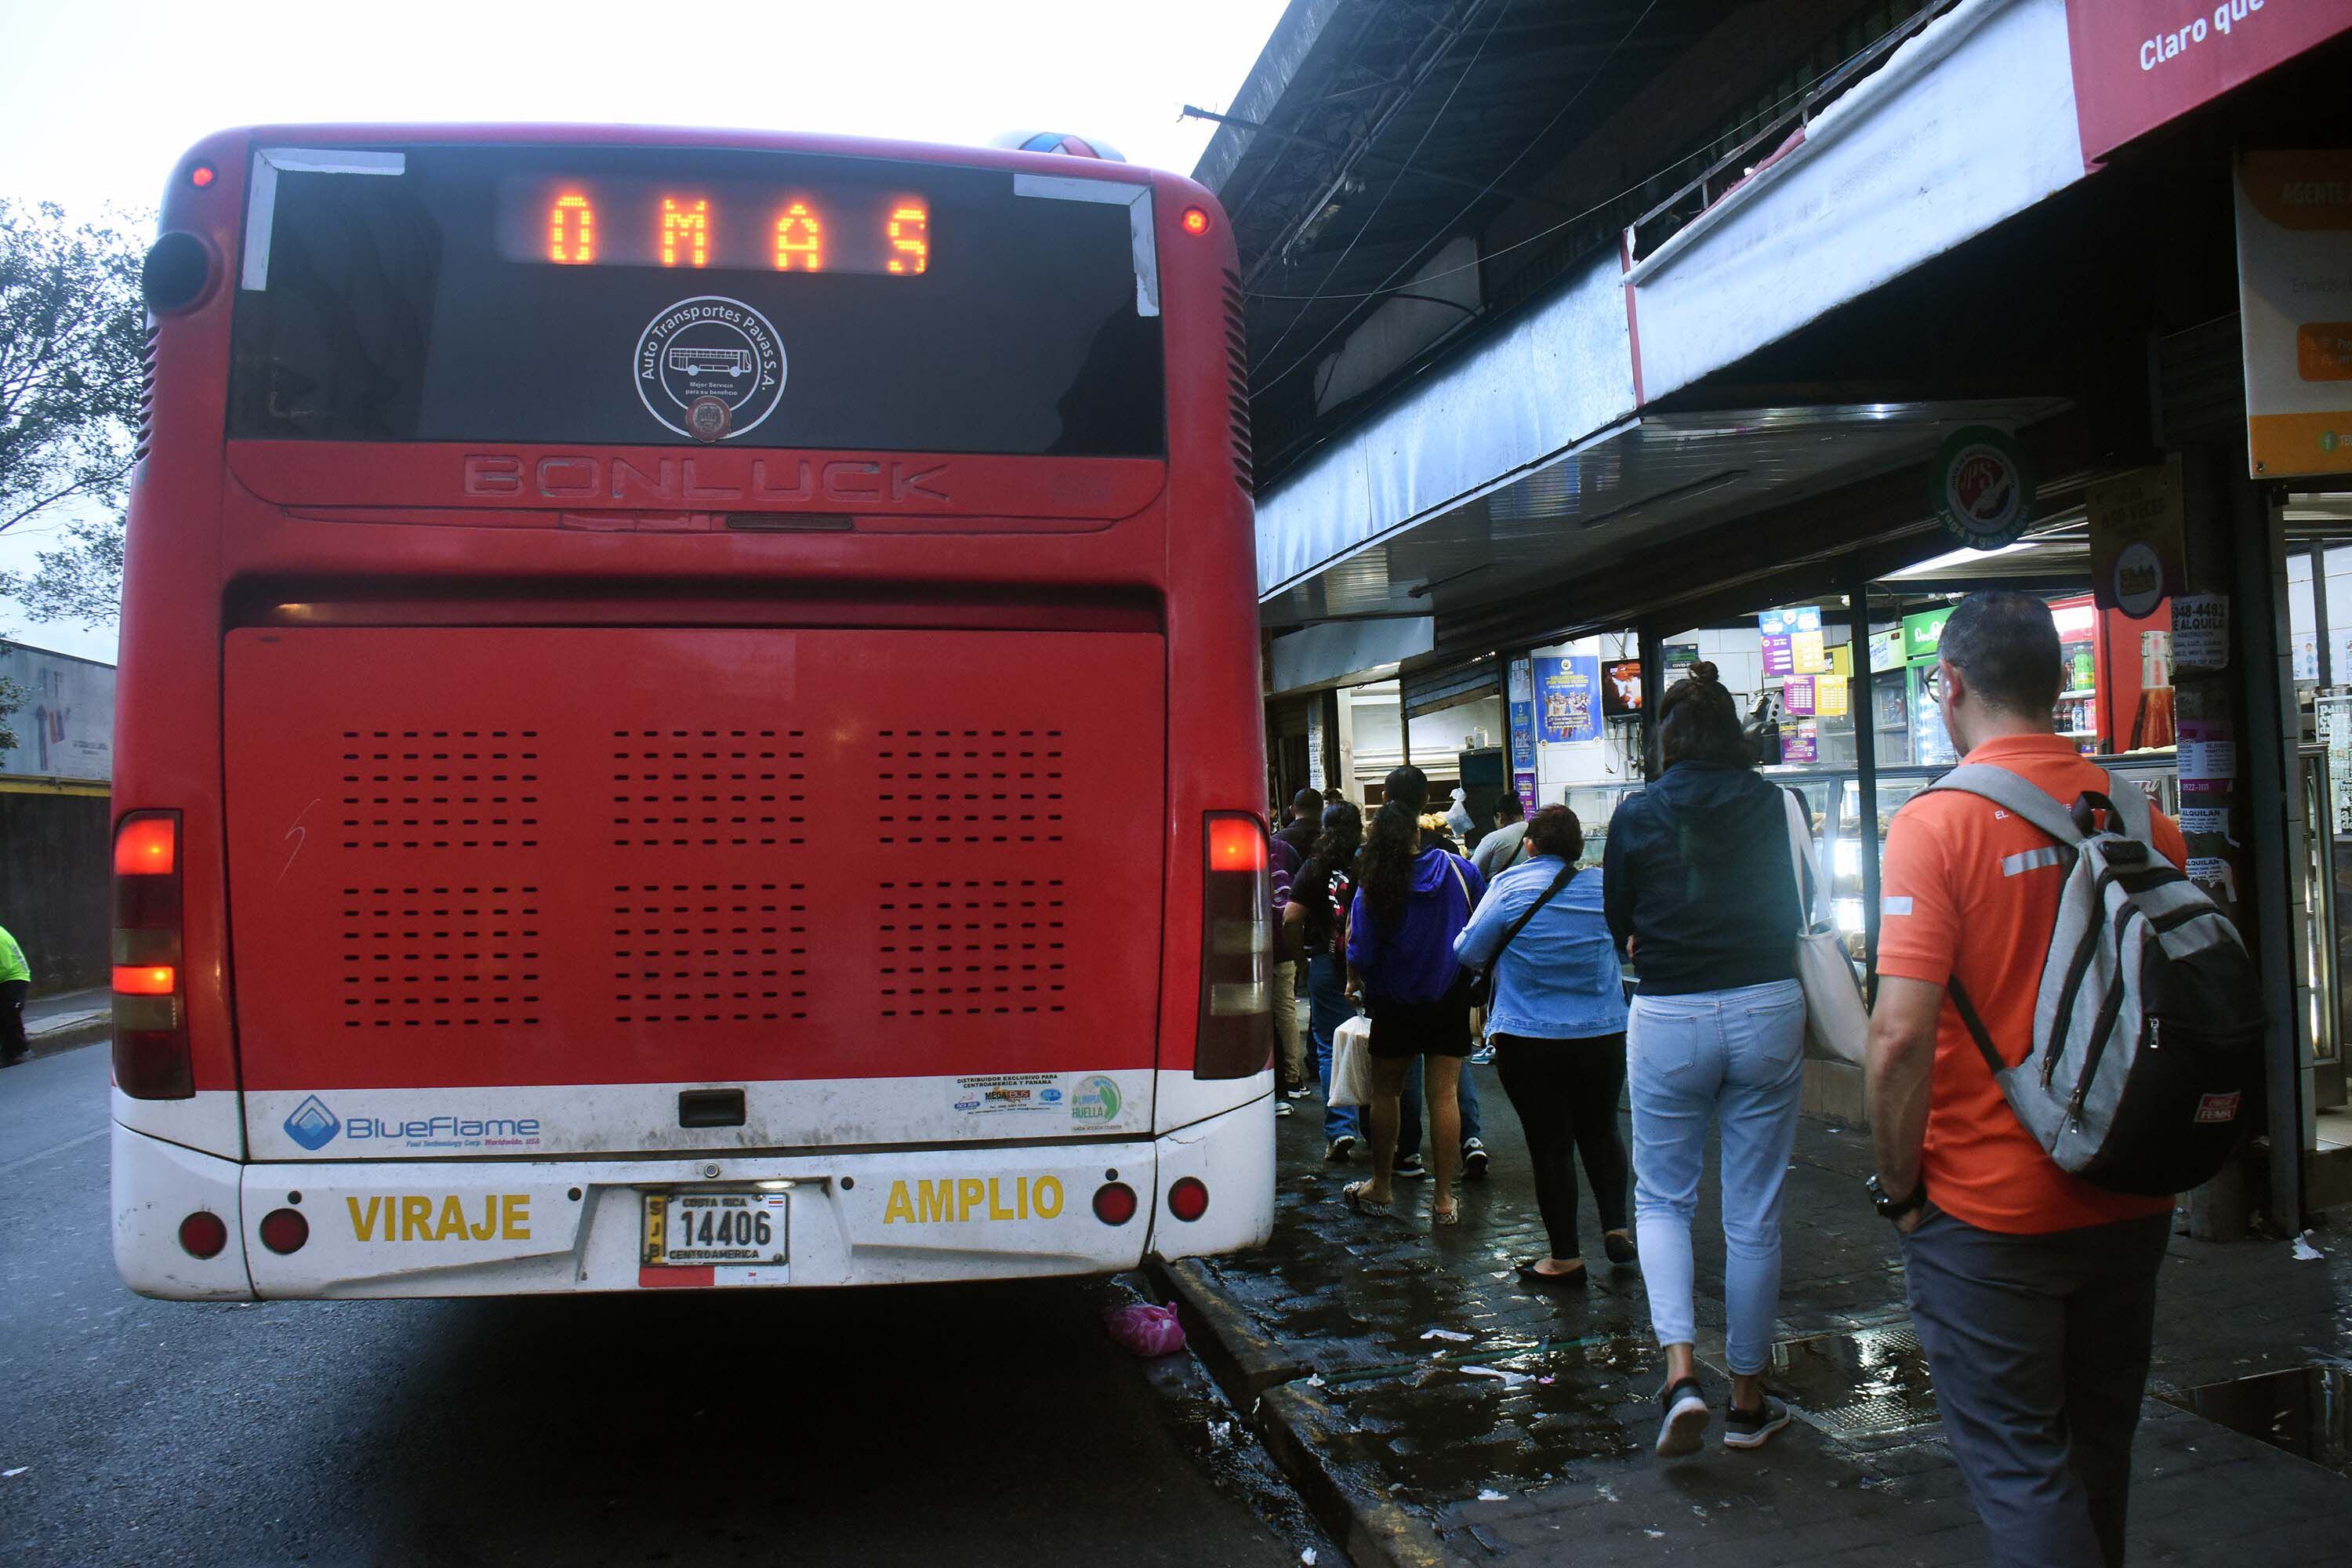 La vida útil de los autobuses de rutas de transporte público está fijada en 15 años, según la normativa.